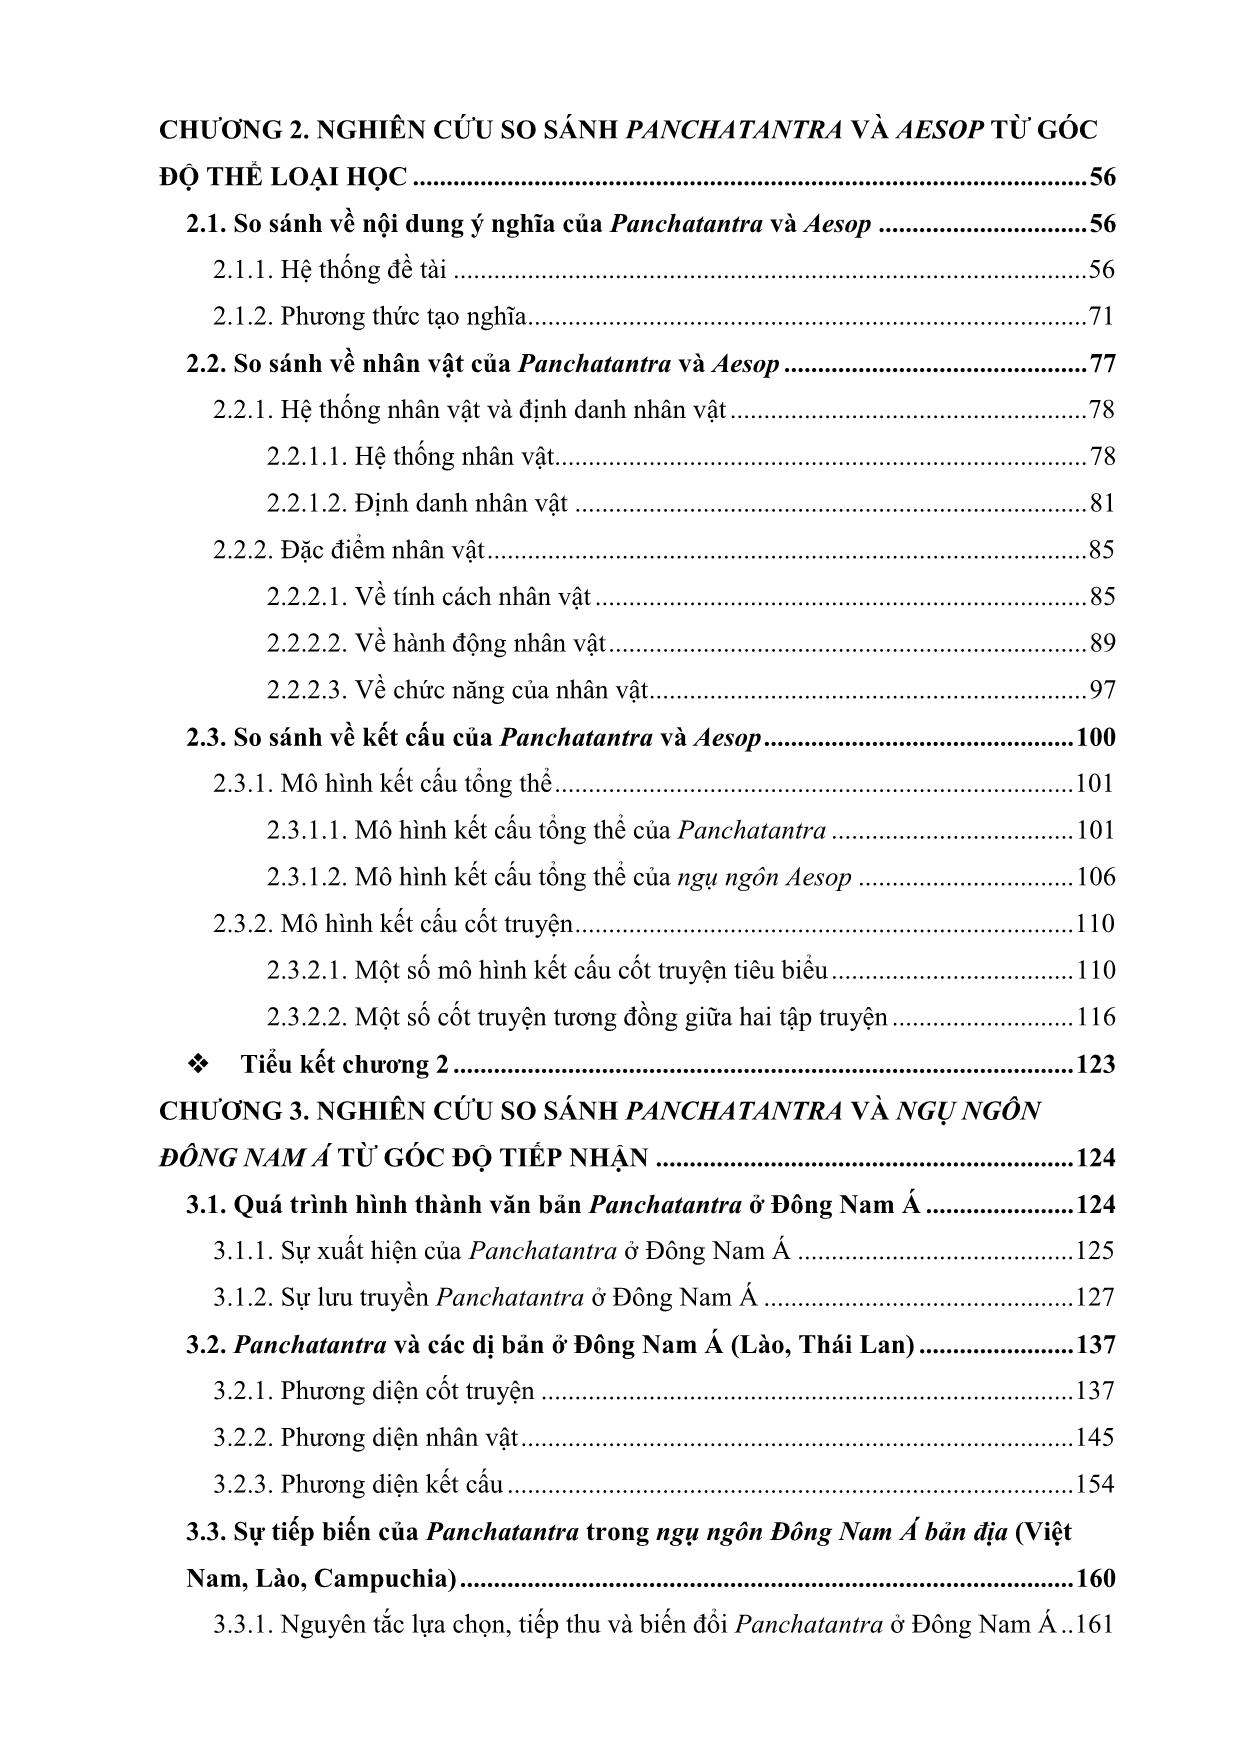 Nghiên cứu so sánh ngụ ngôn Ấn Độ (Panchatantra) với ngụ ngôn Hy Lạp (Aesop) và ngụ ngôn Đông Nam Á (Việt Nam, Lào, Campuchia, Thái Lan) trang 6